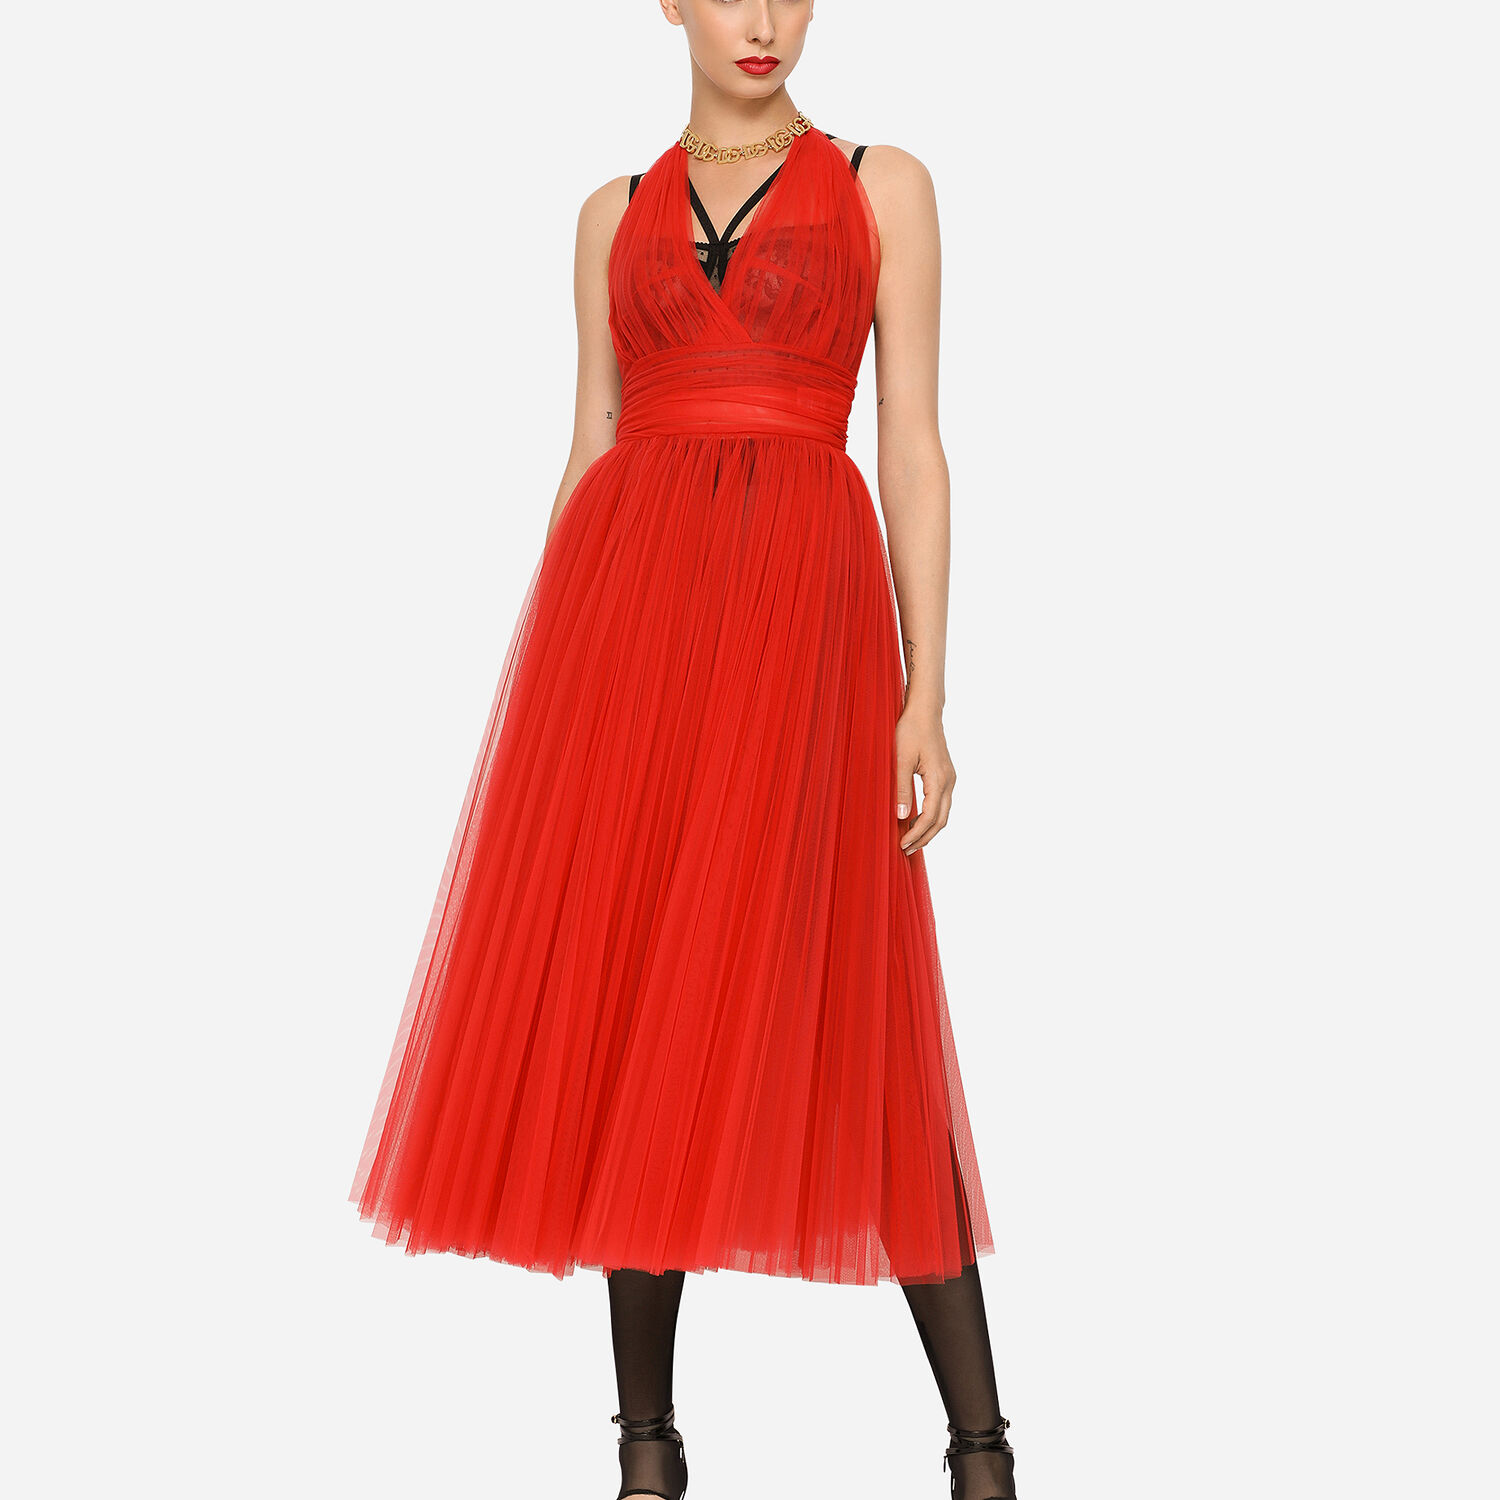 Dolce & Gabbana - Girls Red Tulle DG Logo Dress